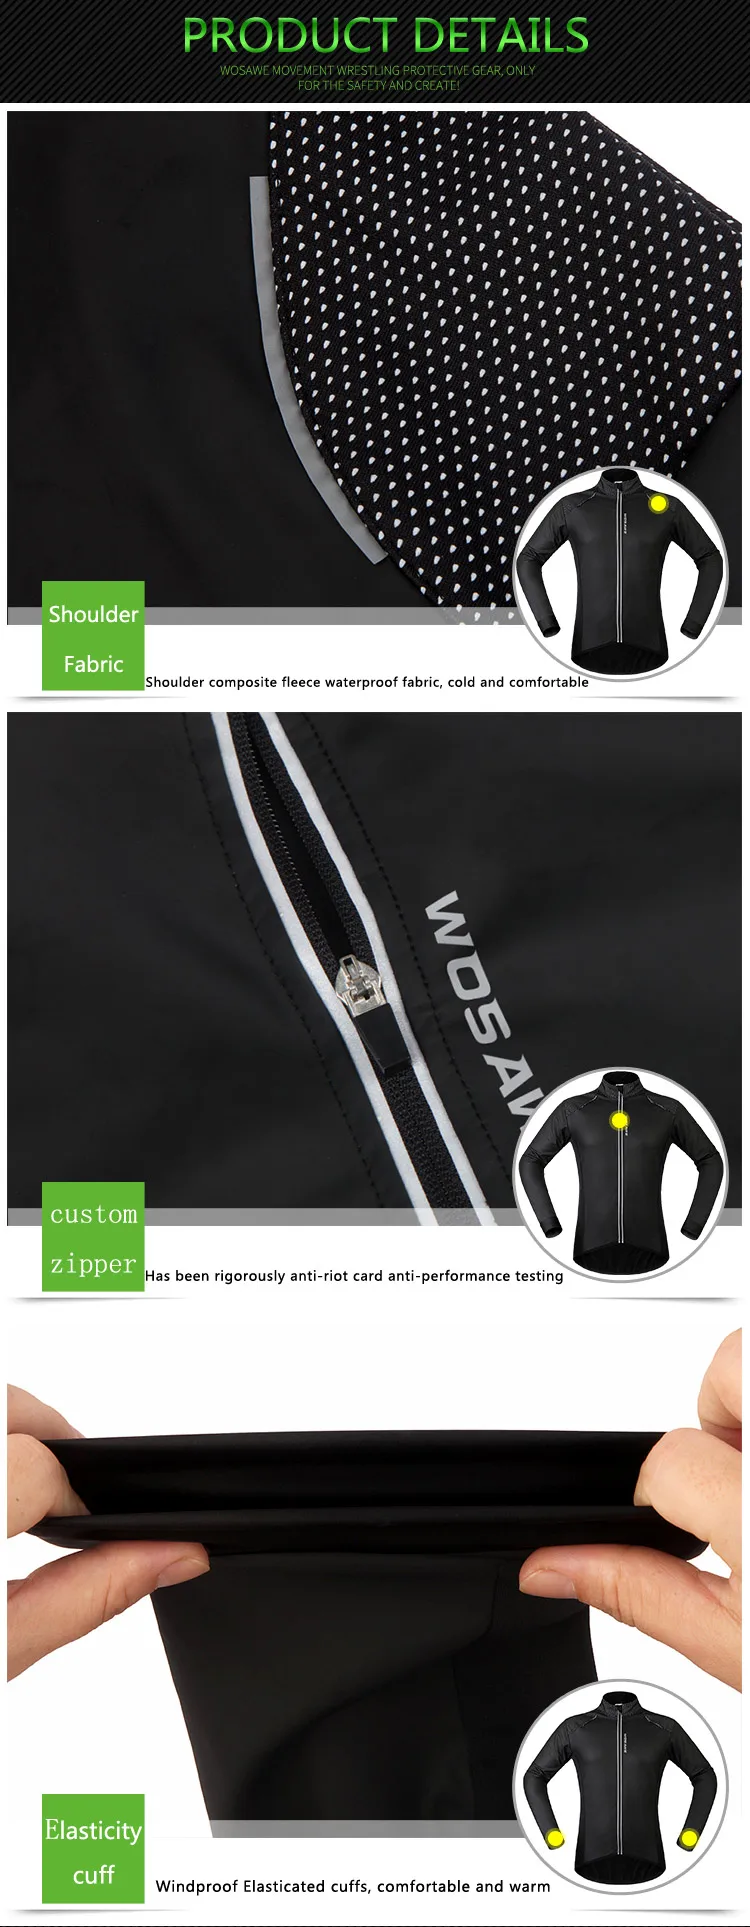 WOSAWE велосипедная зимняя теплая куртка, ветронепроницаемая, водонепроницаемая, для горного велосипеда, Джерси для мужчин и женщин, ветровки, ткань для велоспорта